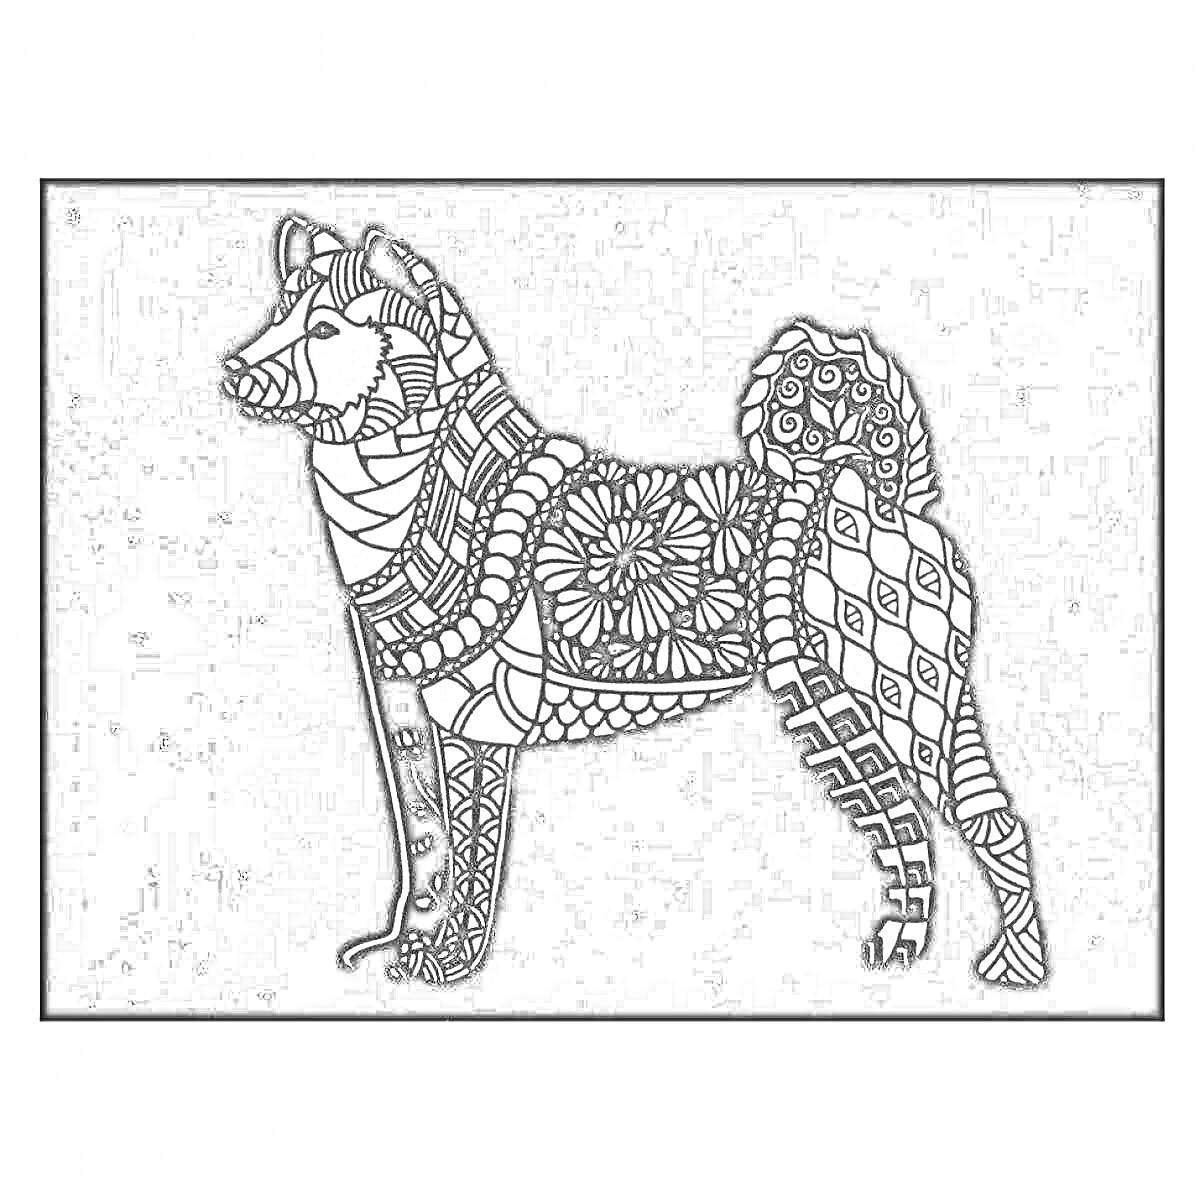 Раскраска Раскраска с изображением собаки с узорами на черном фоне